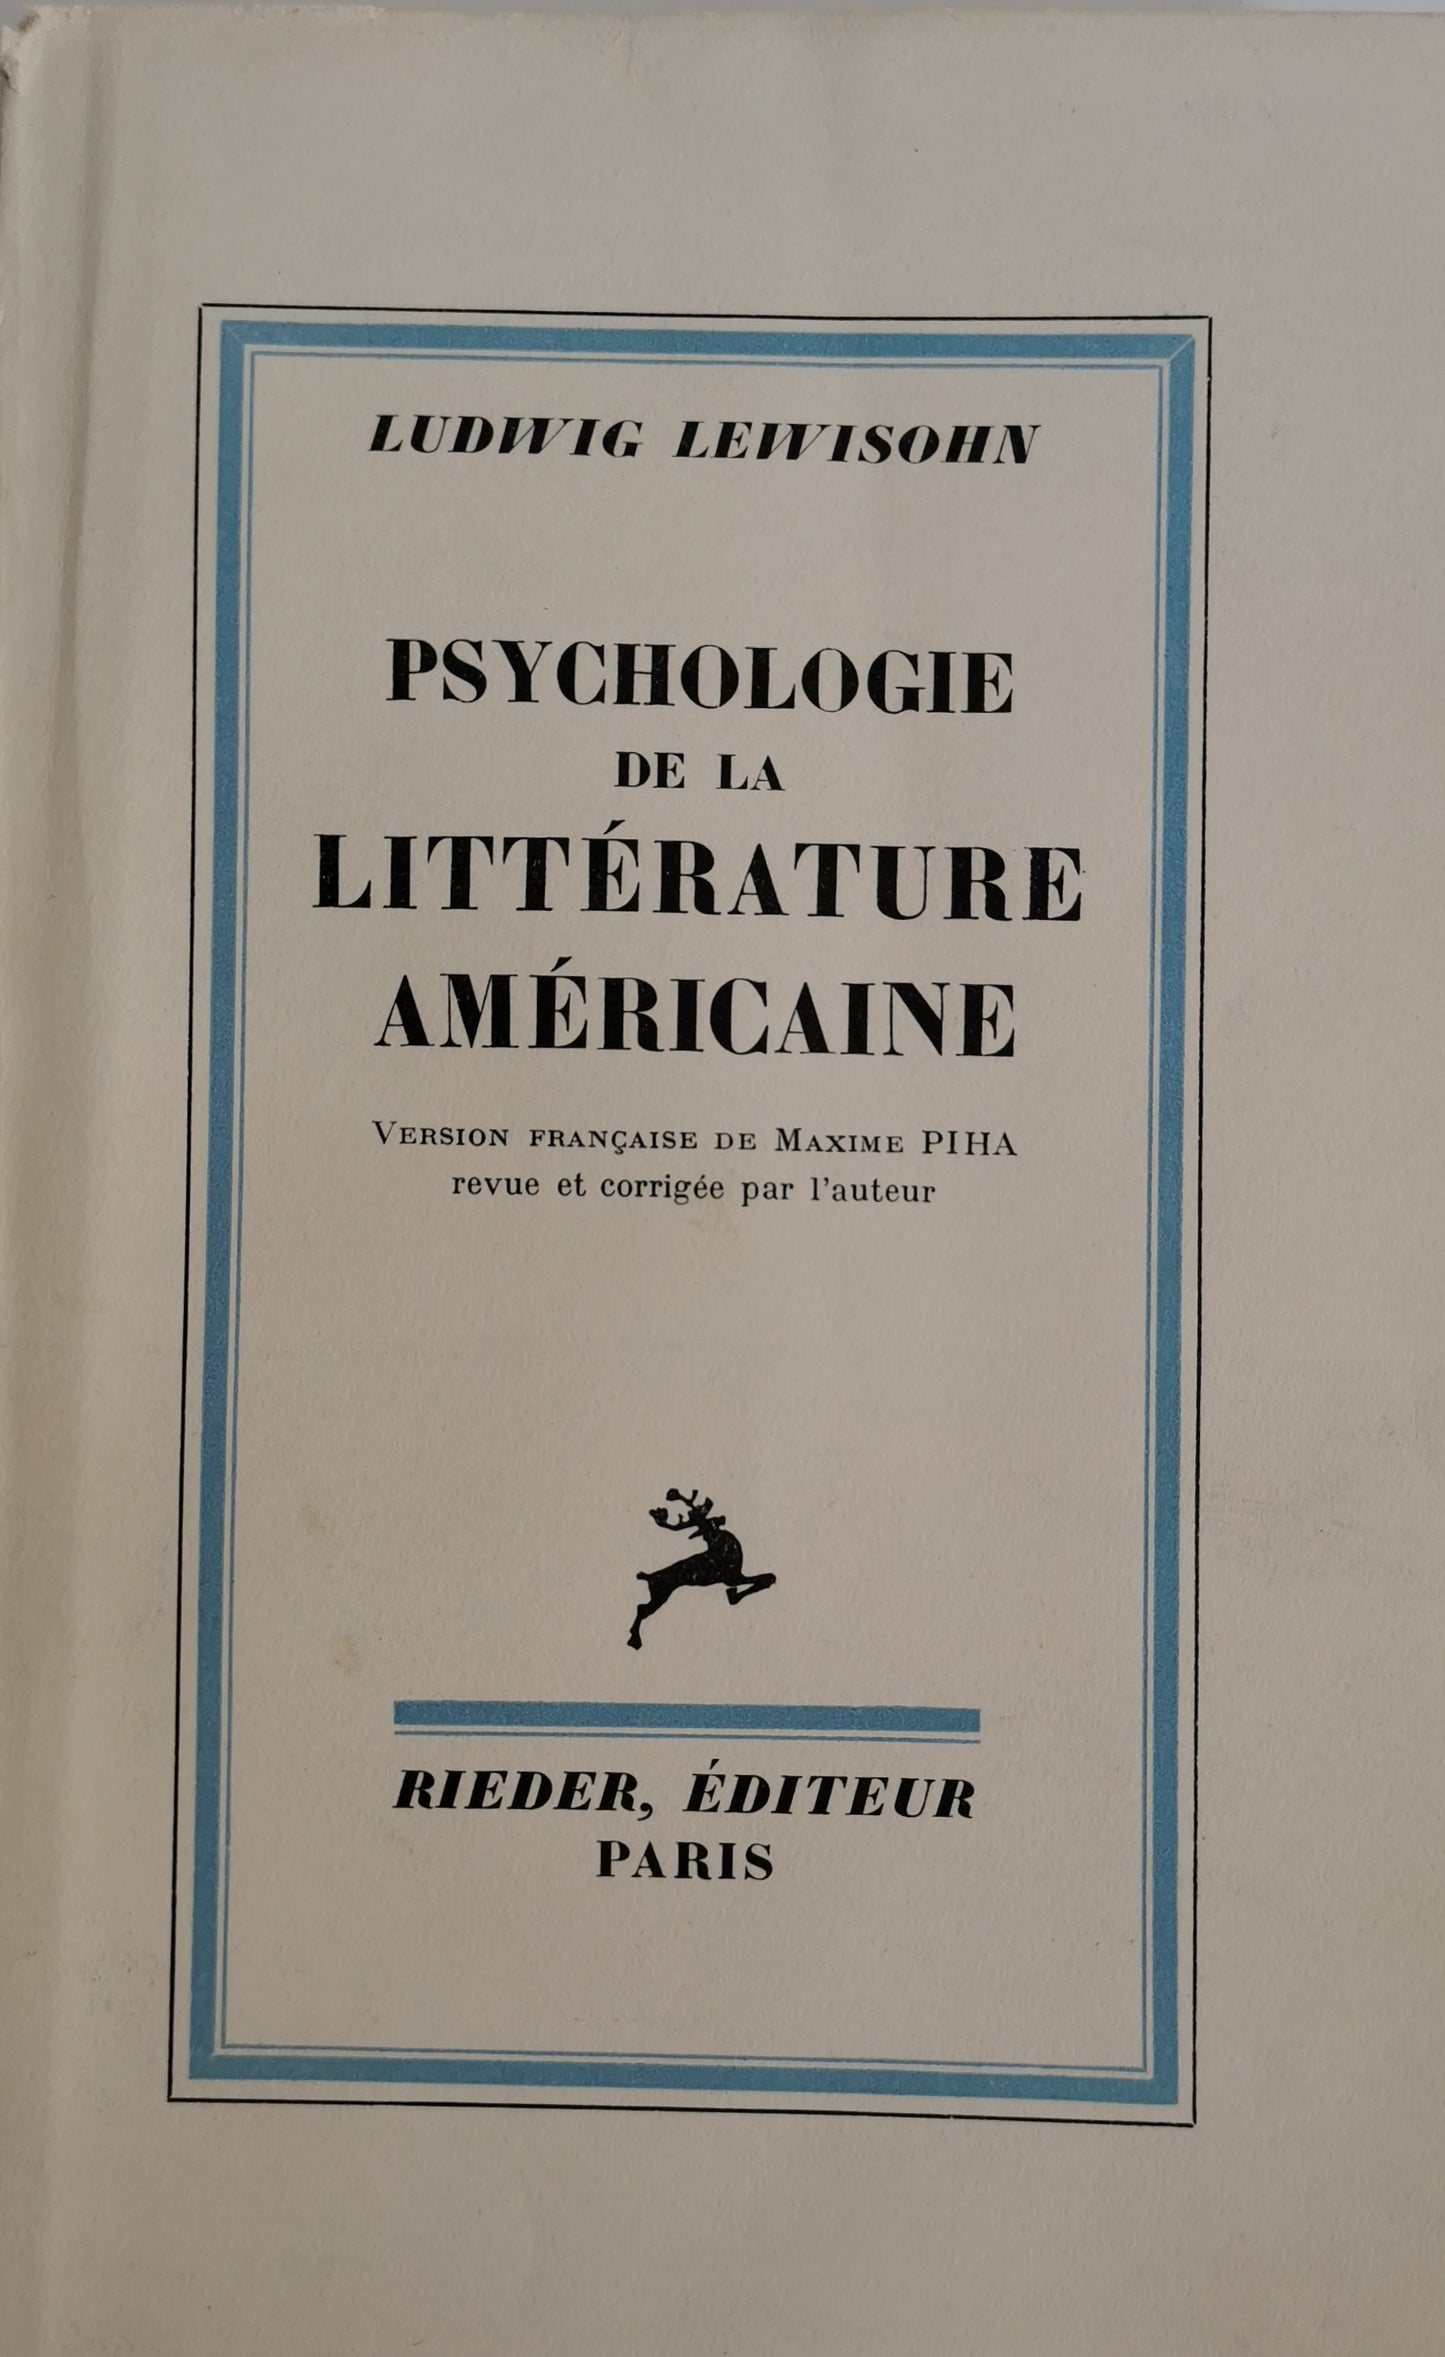 Psychologie de la littérature américaine (Expression in America), Ludwig Lewisohn, Version française de Maxime Piha, revue et corrigée par l'auteur, Rieder, 1934.